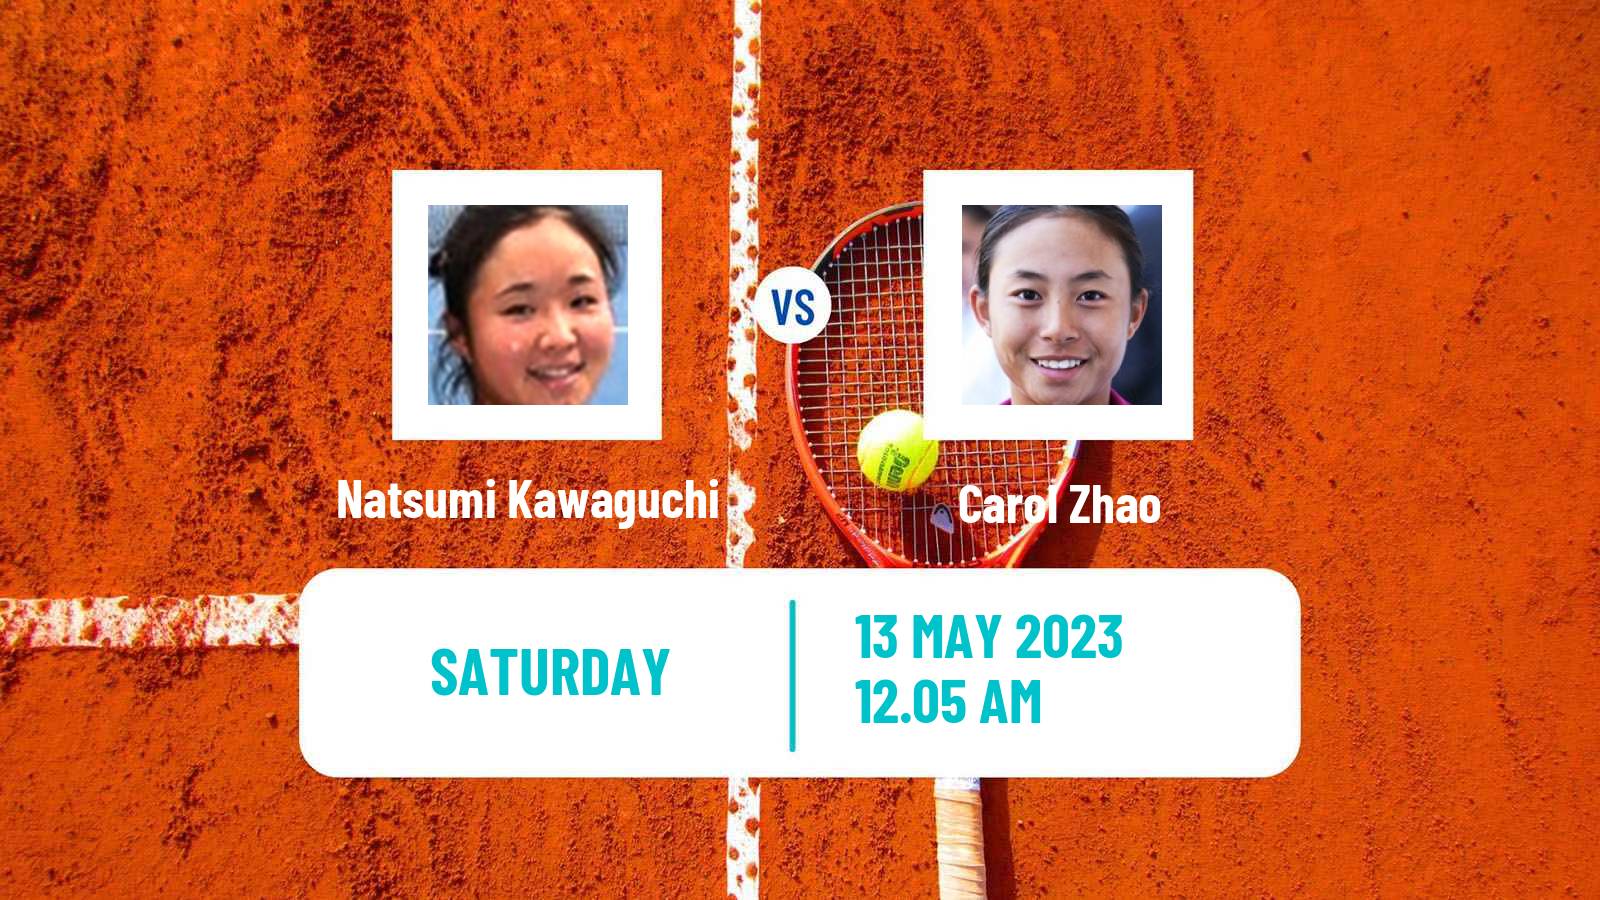 Tennis ITF Tournaments Natsumi Kawaguchi - Carol Zhao